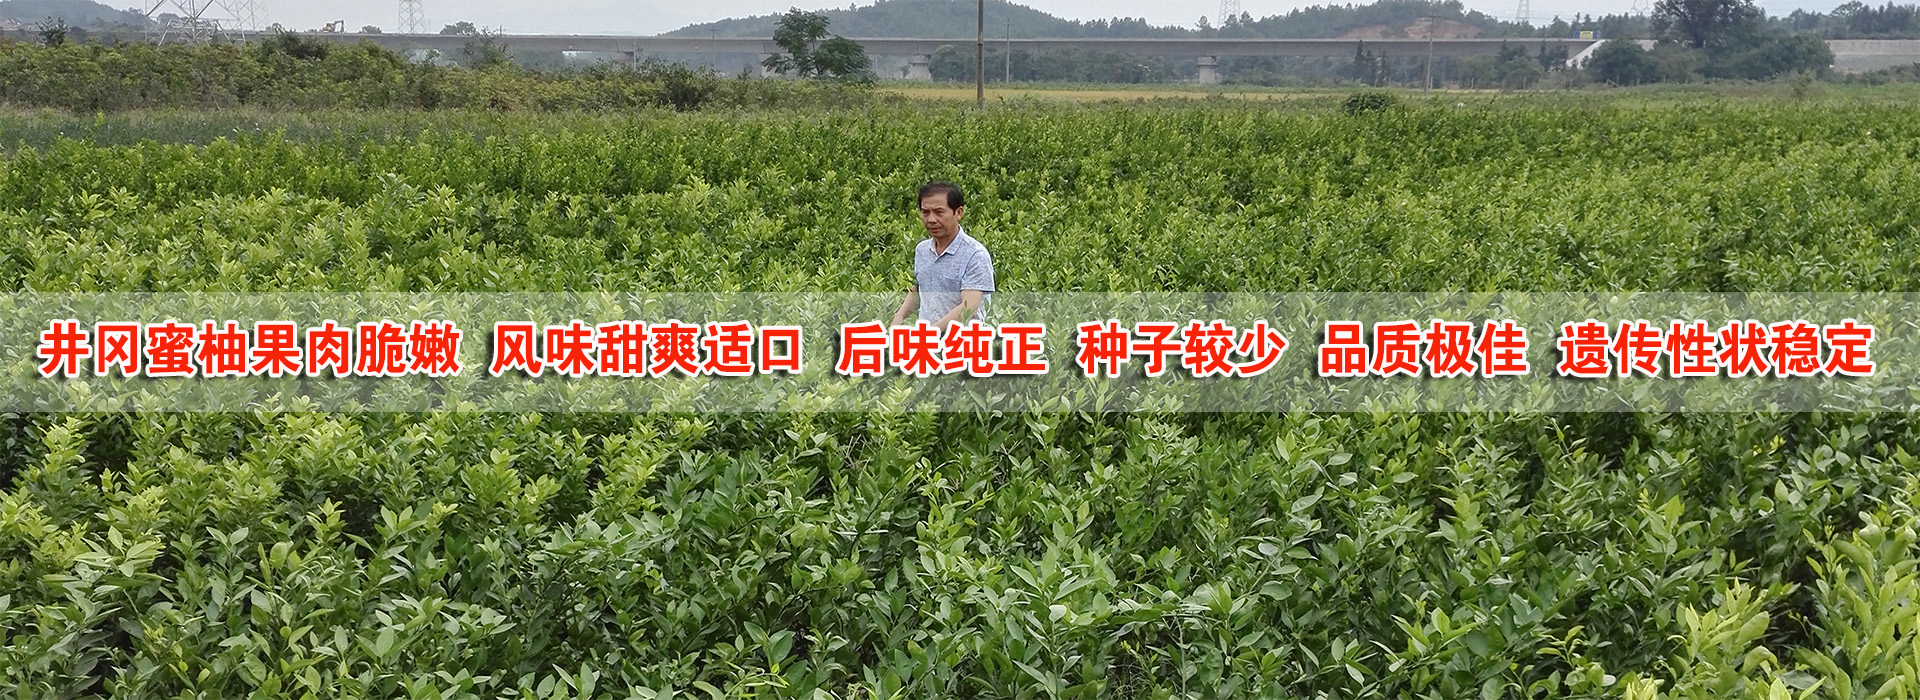 吉安近两年新增井冈山蜜柚苗面积400余亩及井岗蜜柚的三个品种